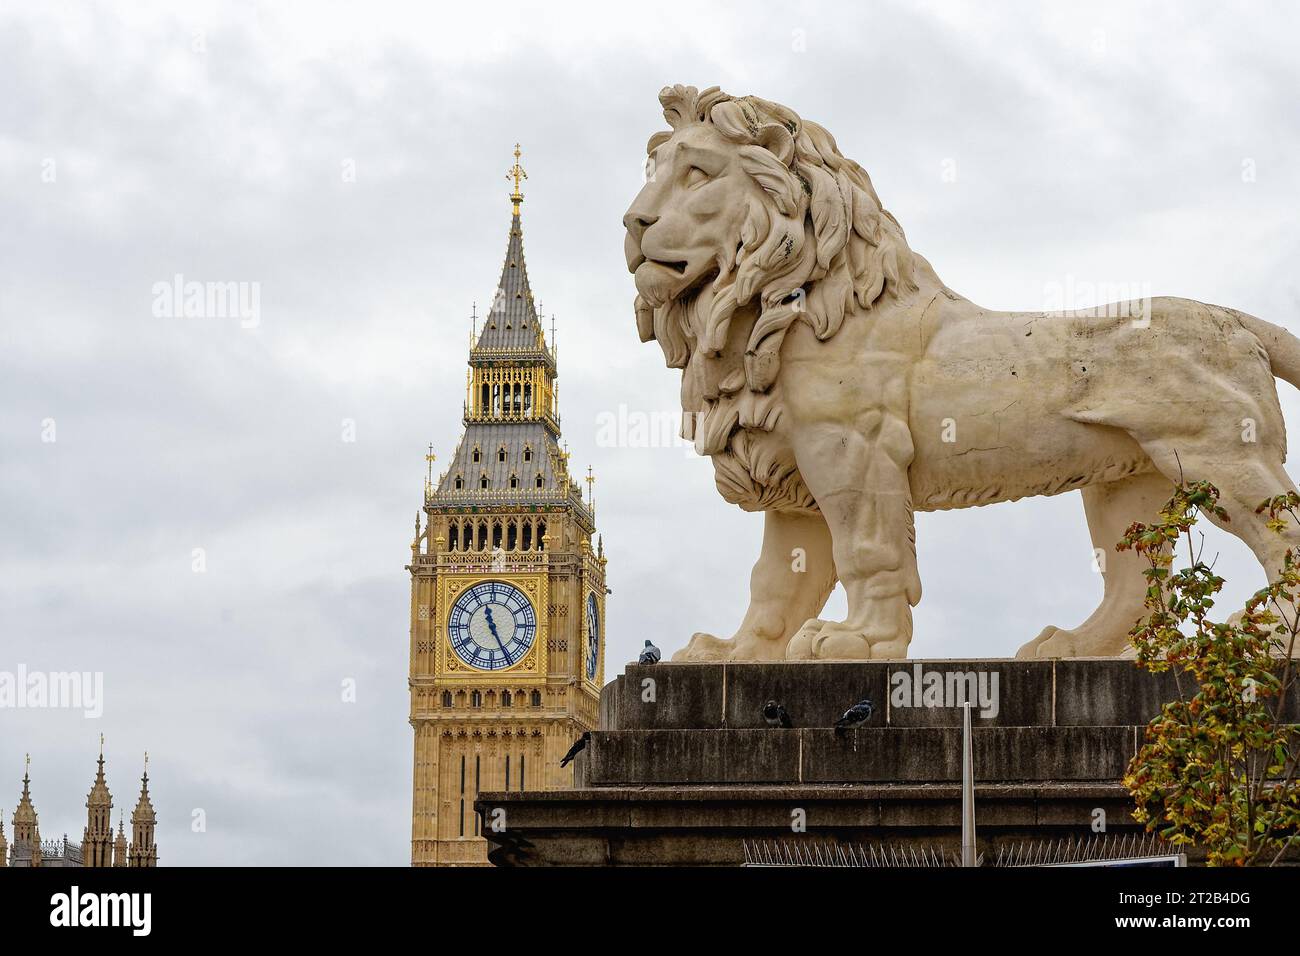 Primo piano di una grande statua di leone in pietra con la torre del Big Ben e l'orologio sullo sfondo, Central London England UK Foto Stock